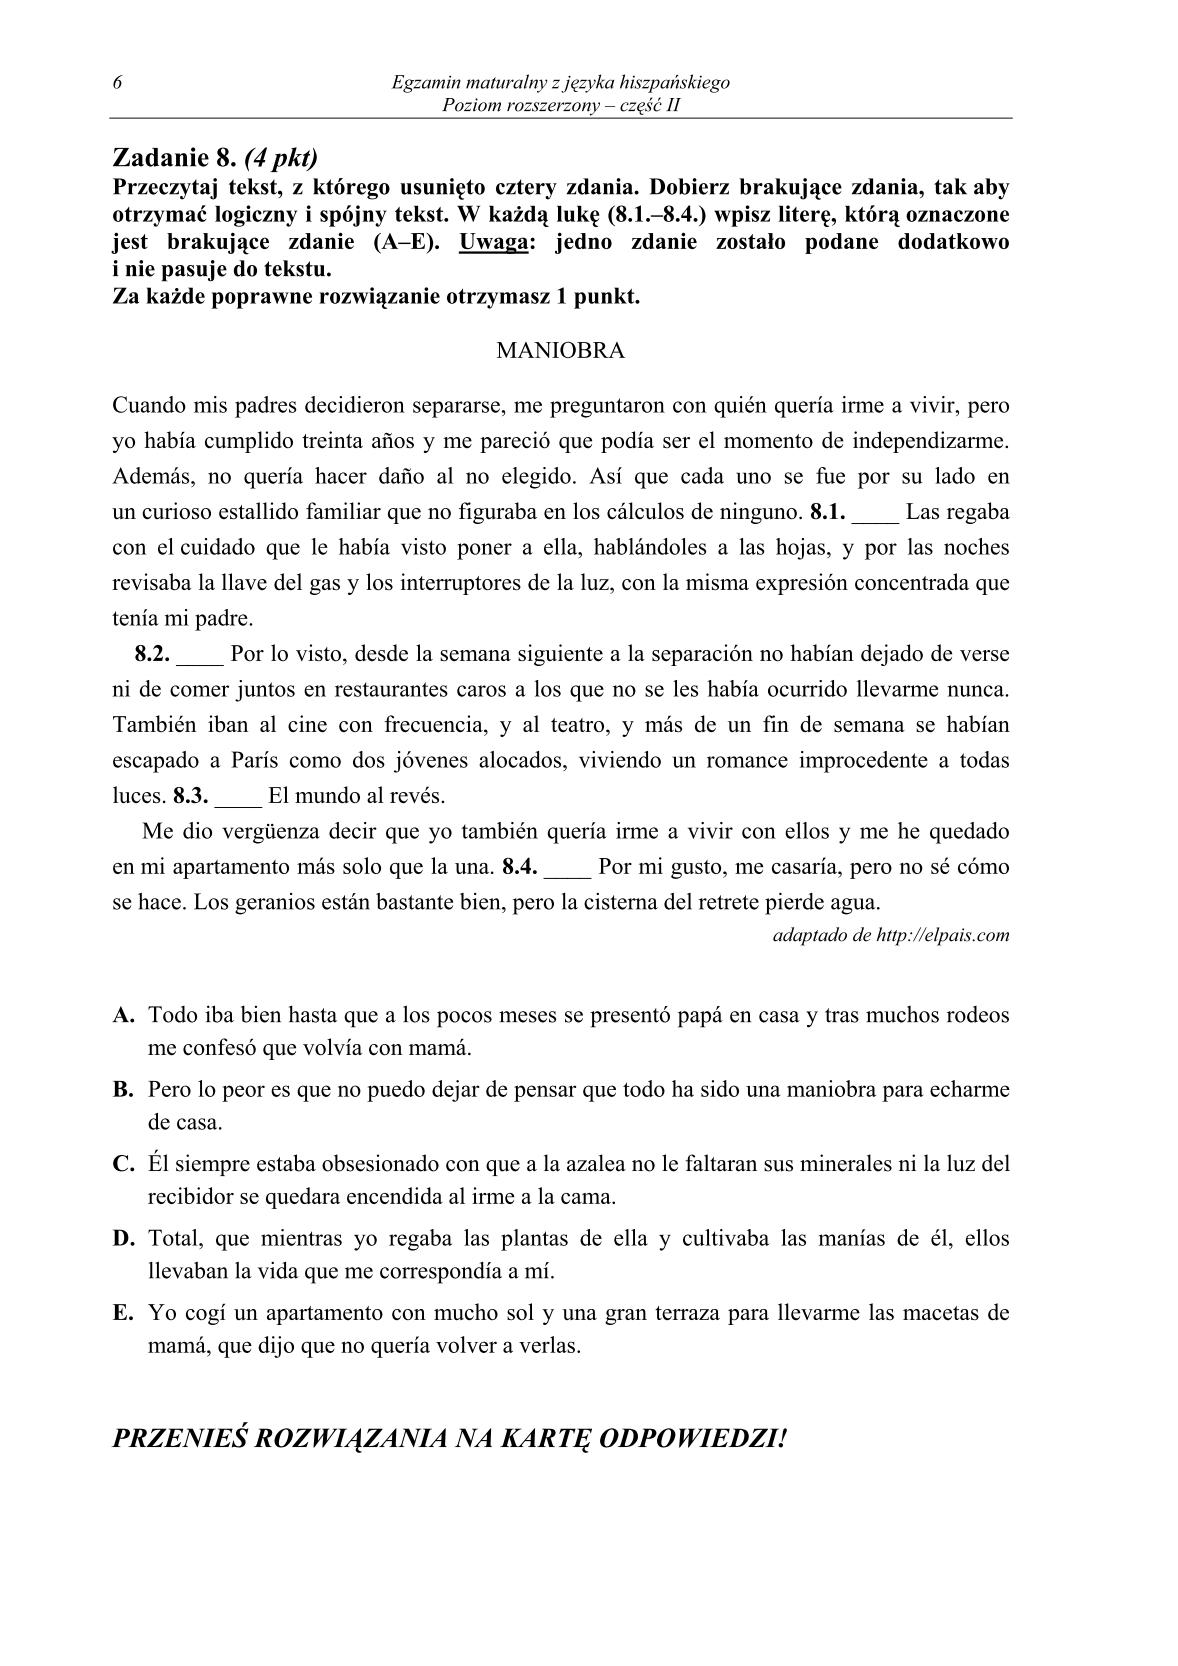 pytania-hiszpanski-poziom-rozszerzony-czesc-II-matura-2014-str.6